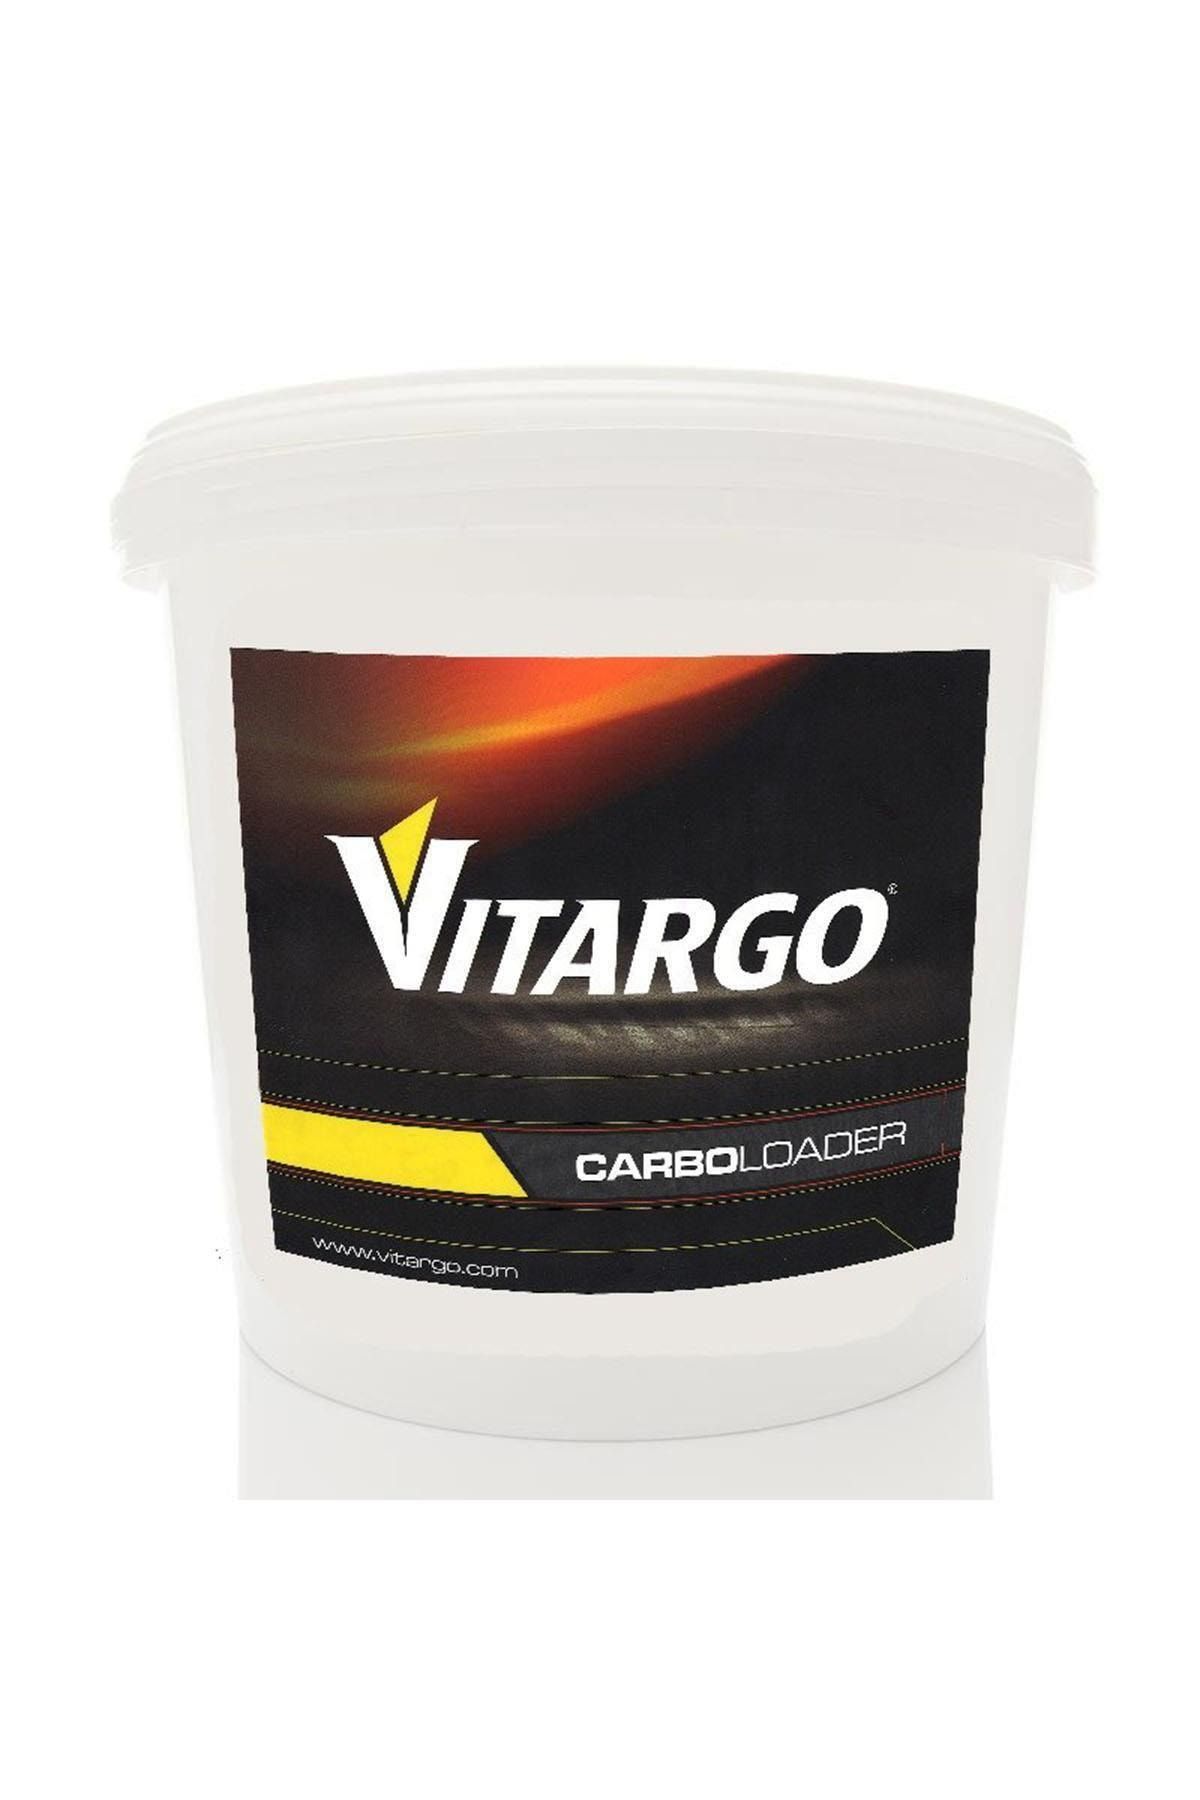 Vitargo Carbolader 2000 gr